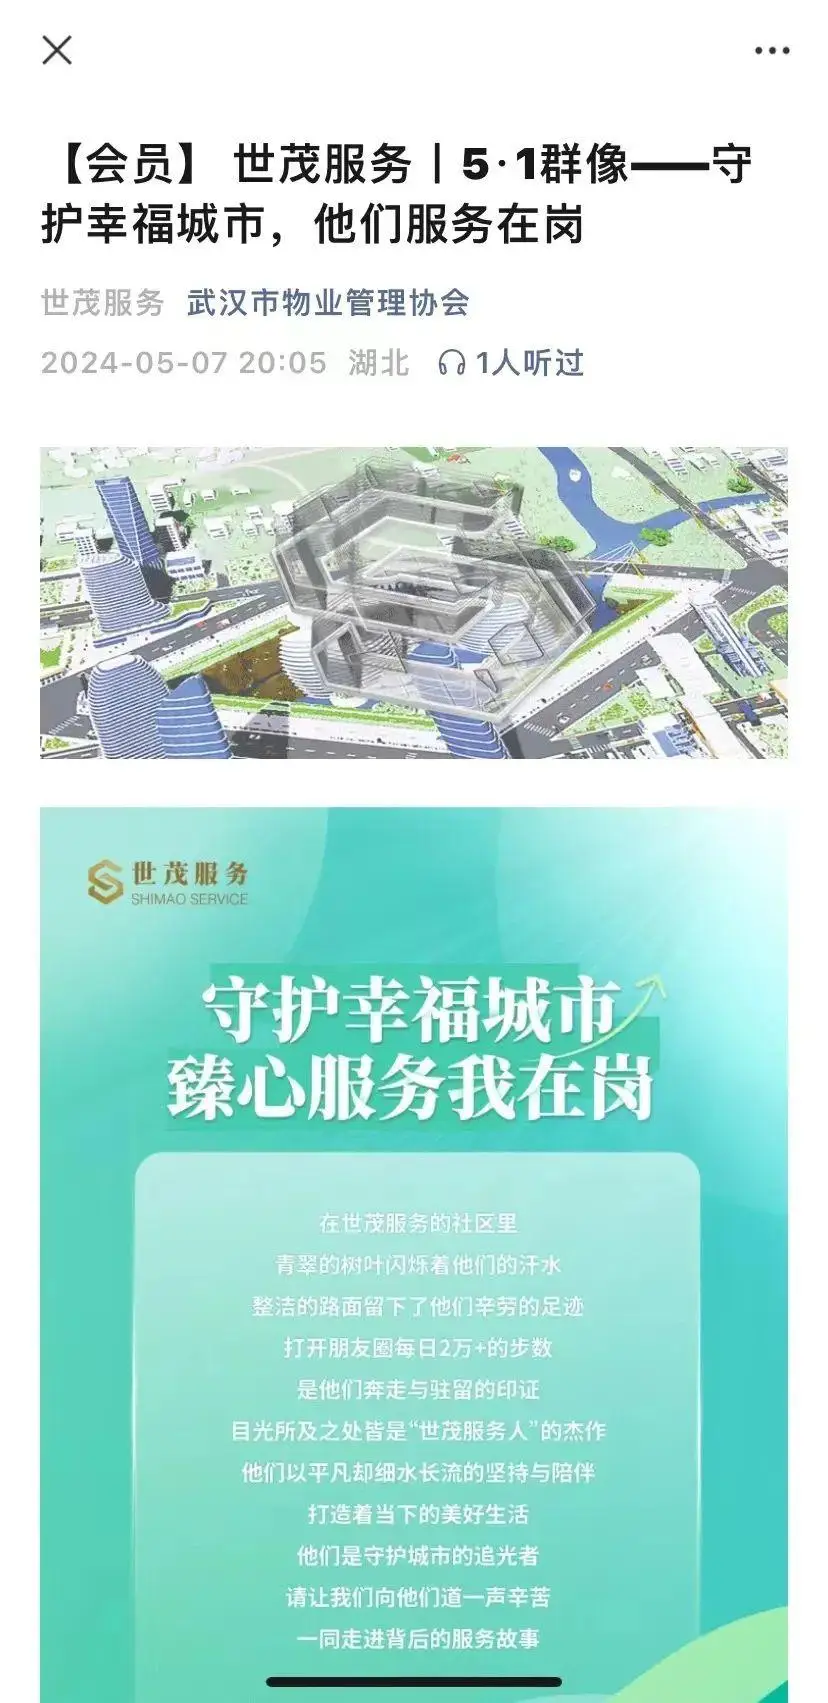 上海 5G 网络覆盖区域待明确，浦东新区成落地推广典范